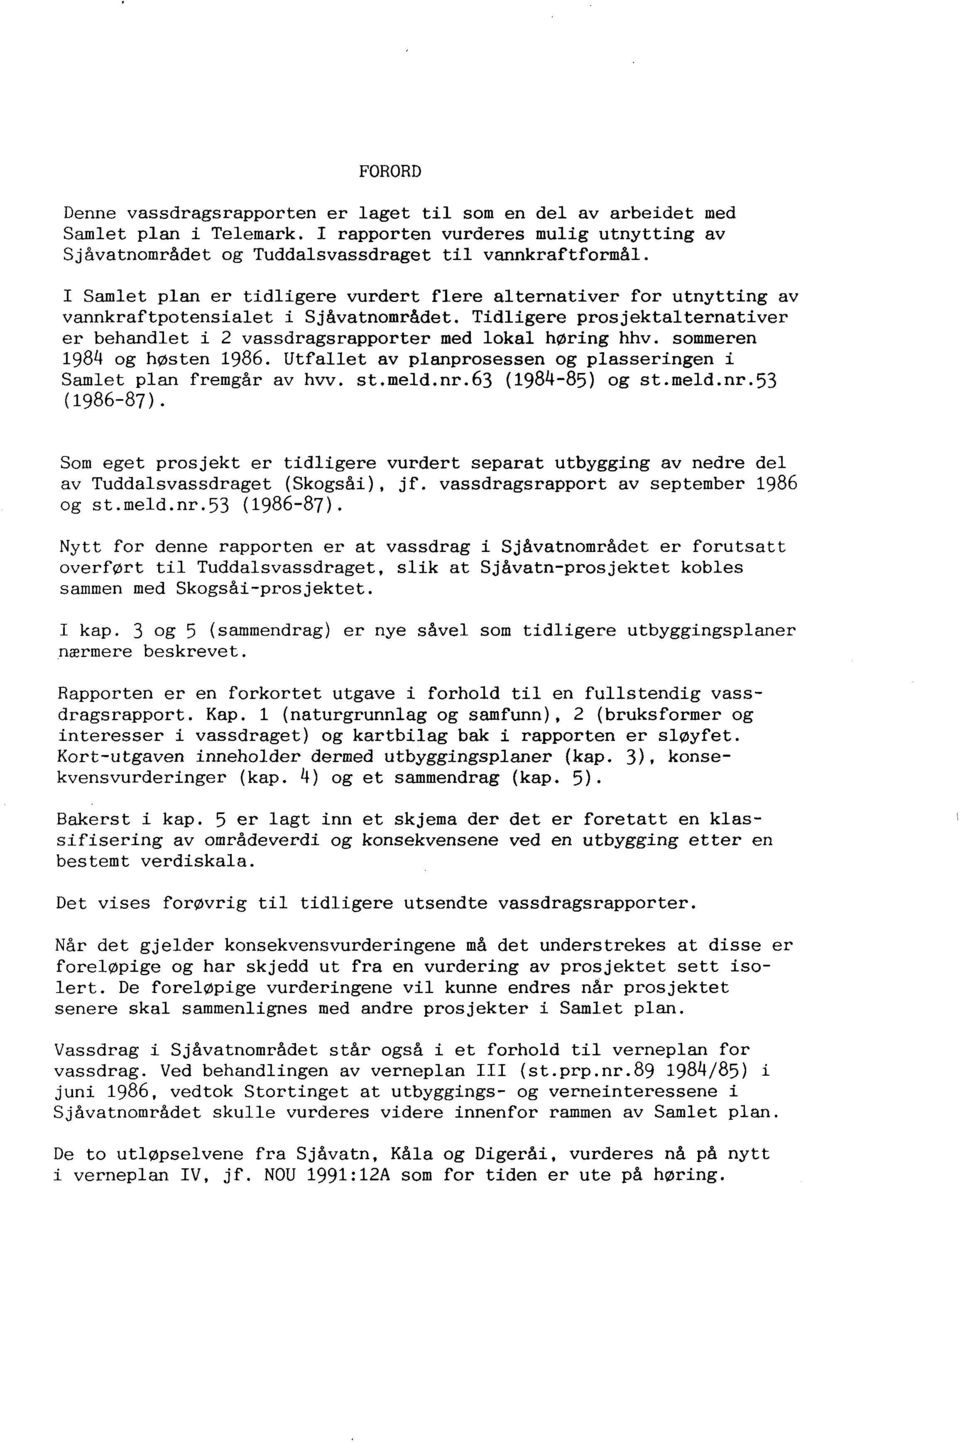 sommeren 1984 og høsten 1986. Utfallet av planprosessen og plasseringen i Samlet plan fremgår av hvv. st.meld.nr.63 (1984-85) og st.meld.nr.53 (1986-87).